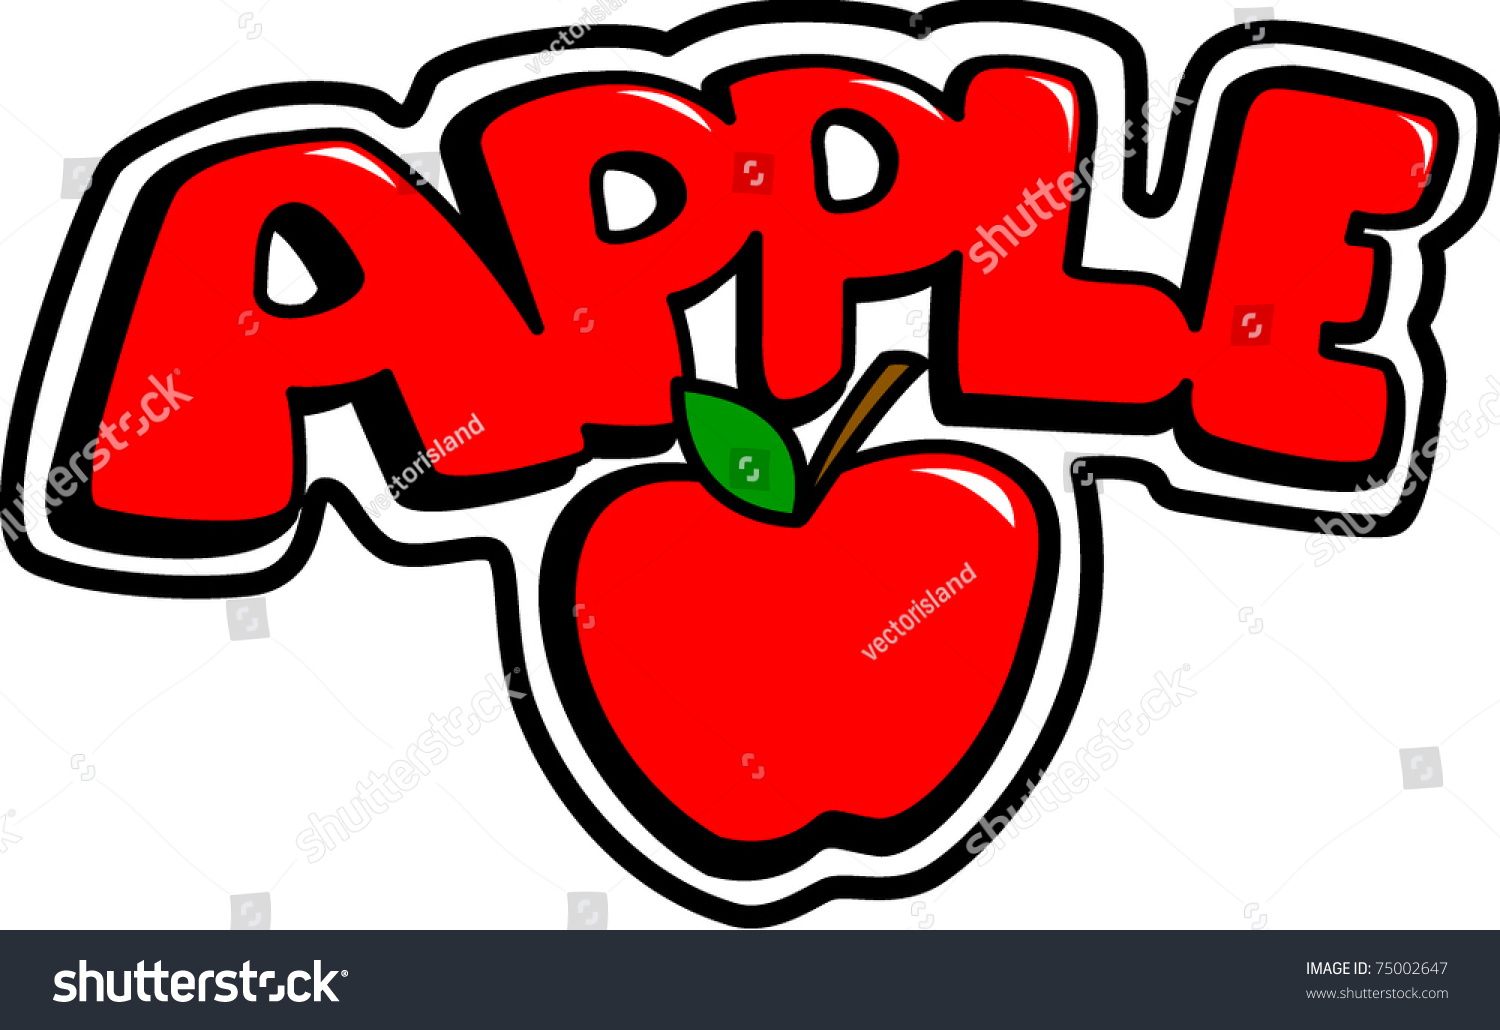 apple word